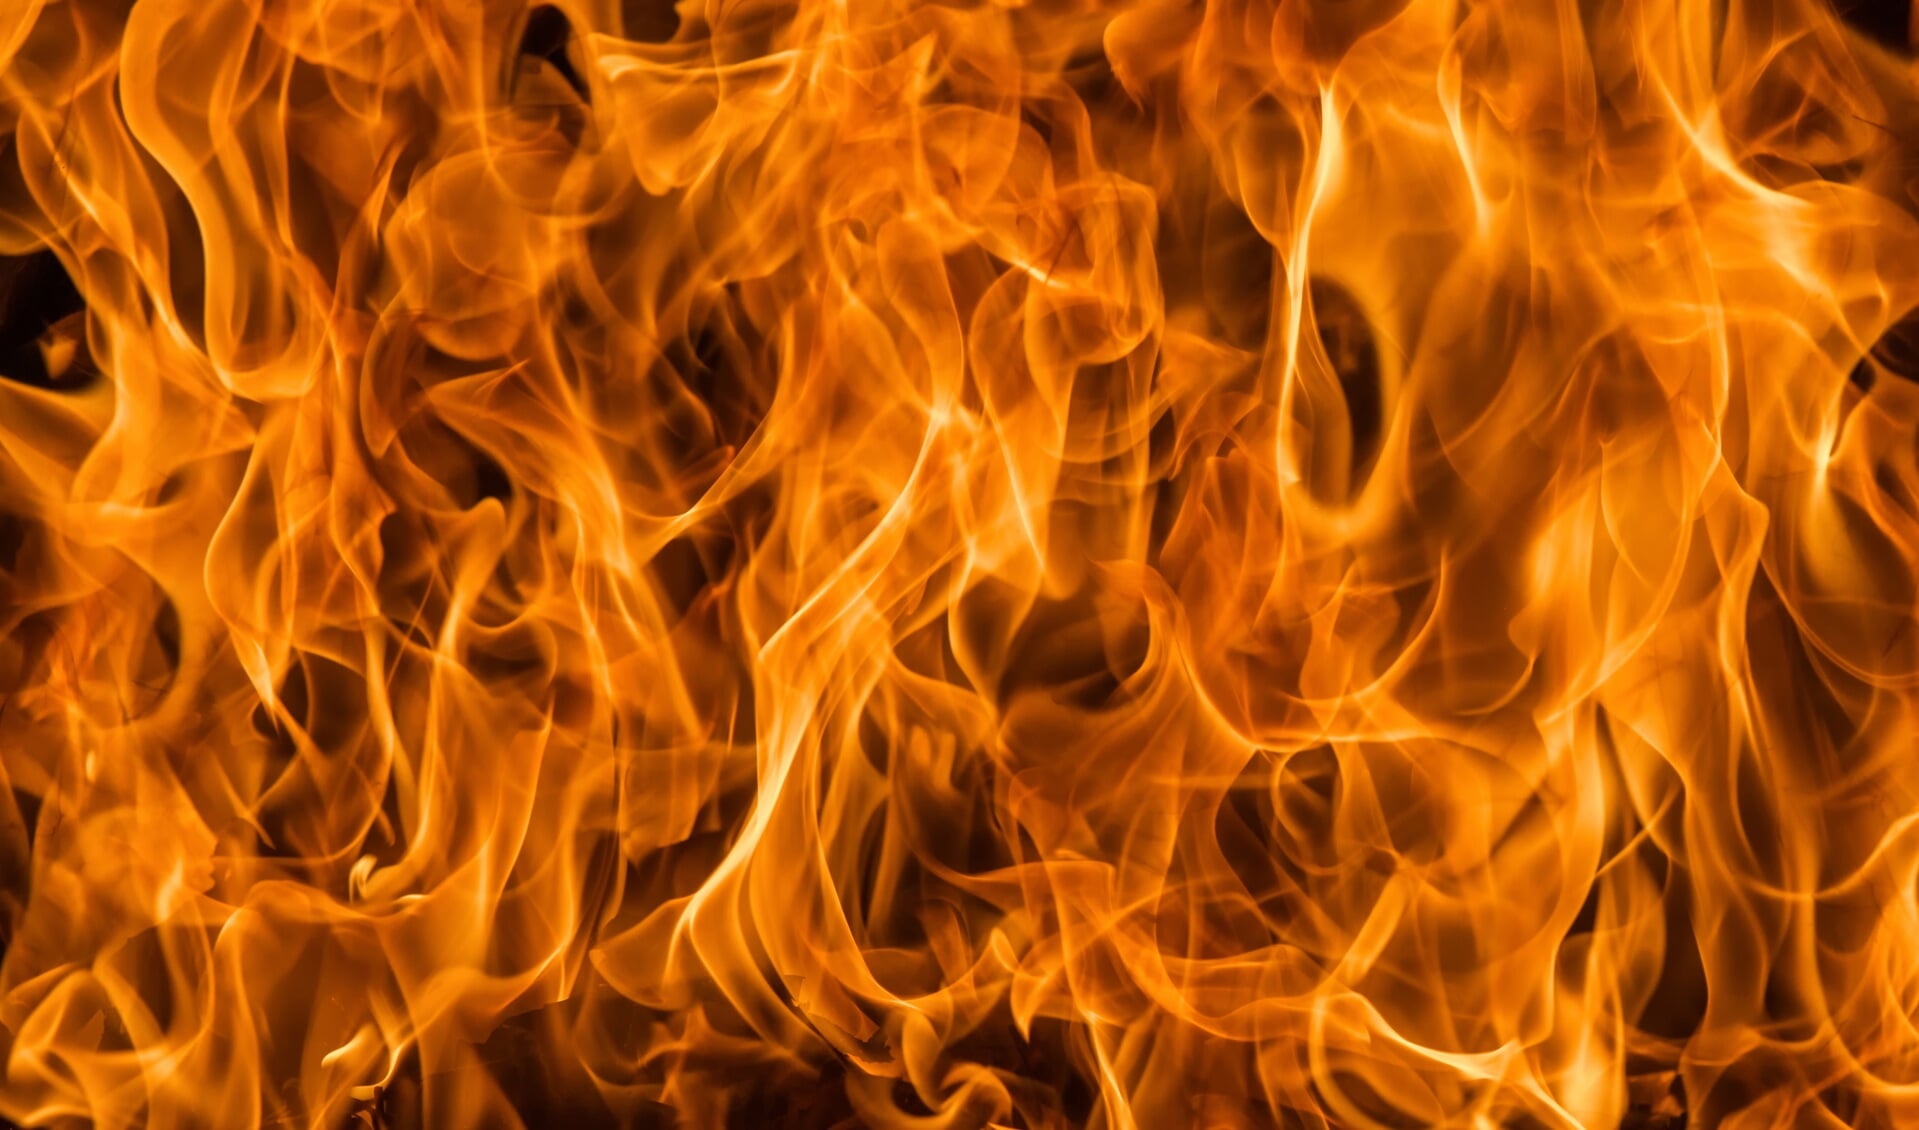 Een gezellige kampvuur kan momenteel tot forse natuurbranden leiden. (Foto: AdobeStock)